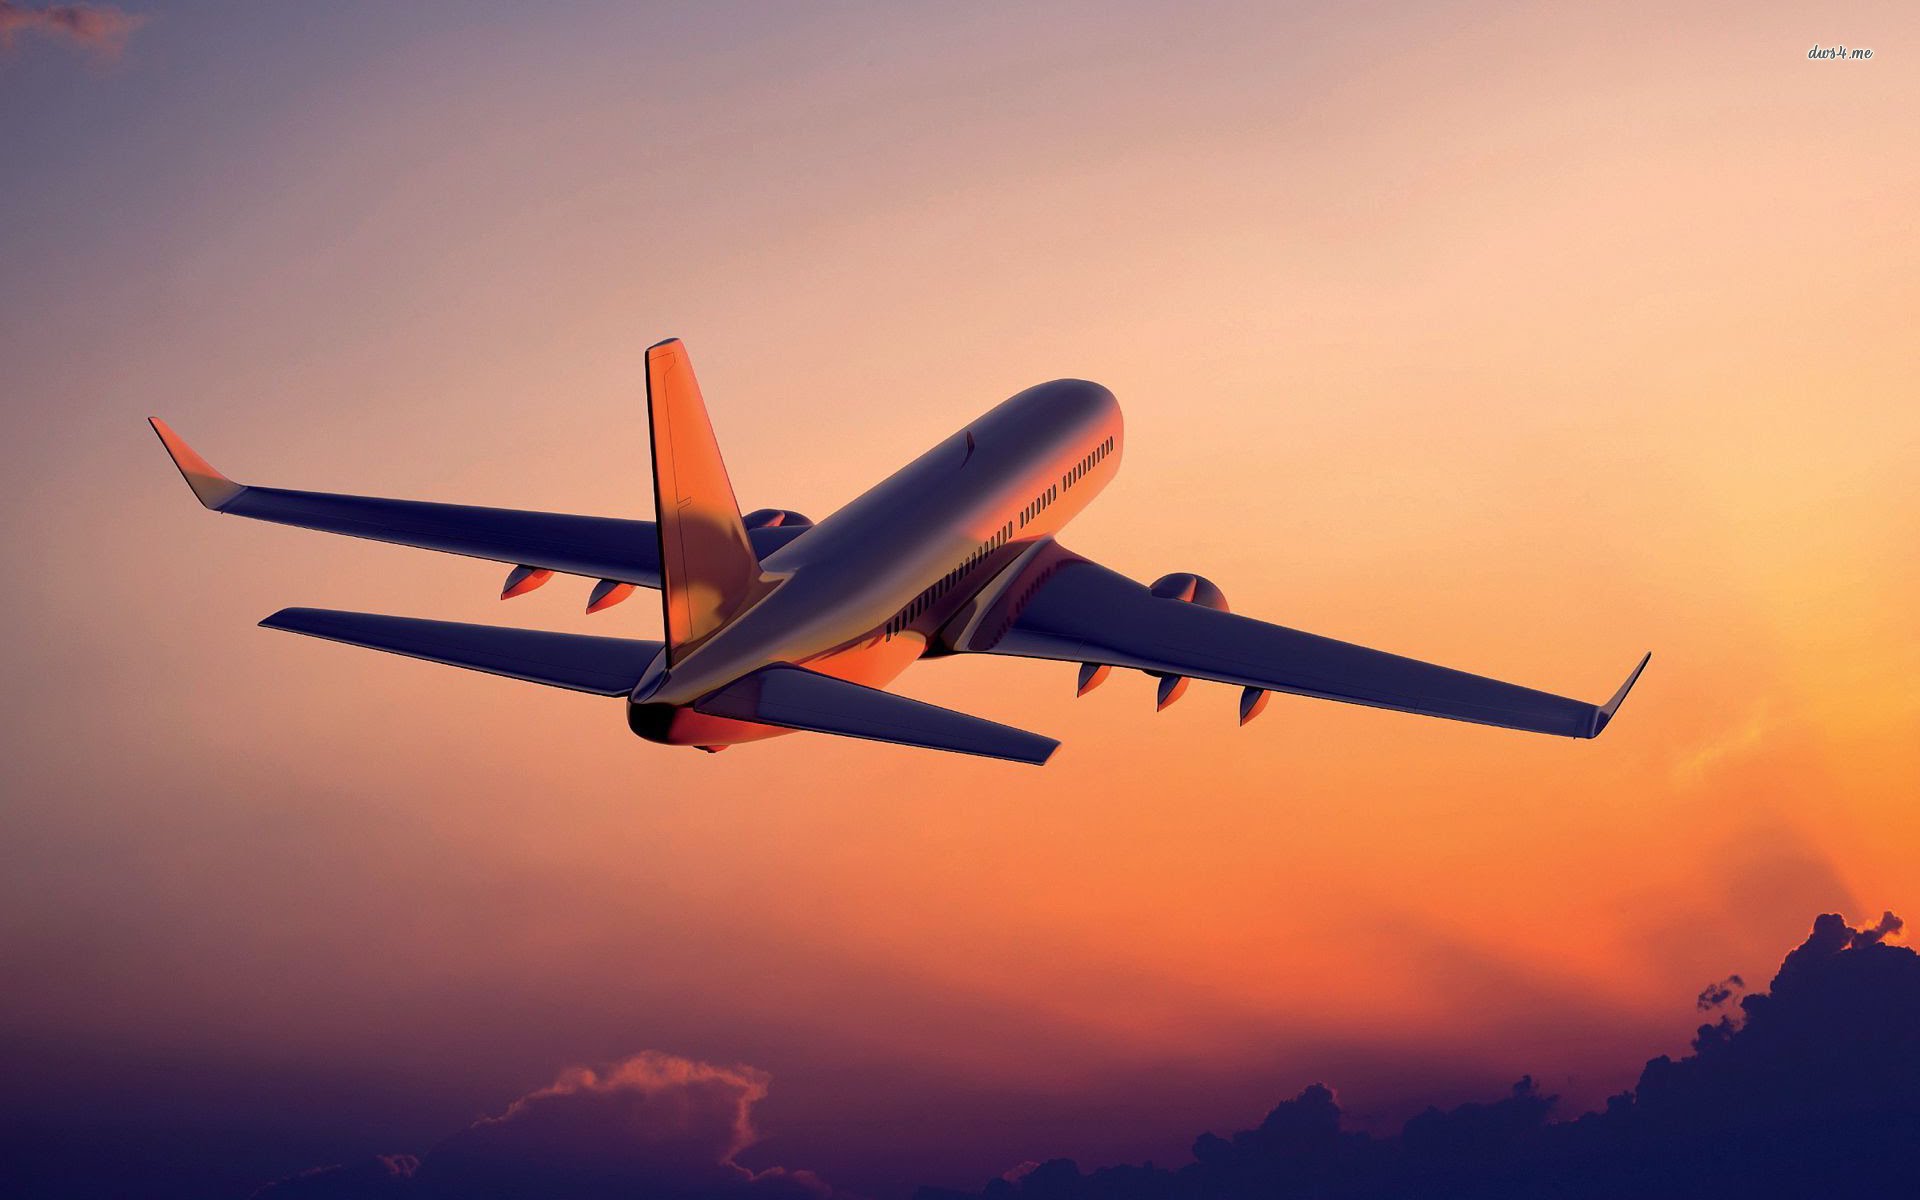 مفاجأة.. “العالم بدون طائرات”.. كارثة طبيعية تهدد بتوقف كامل للرحلات الجوية خلال الساعات القادمة